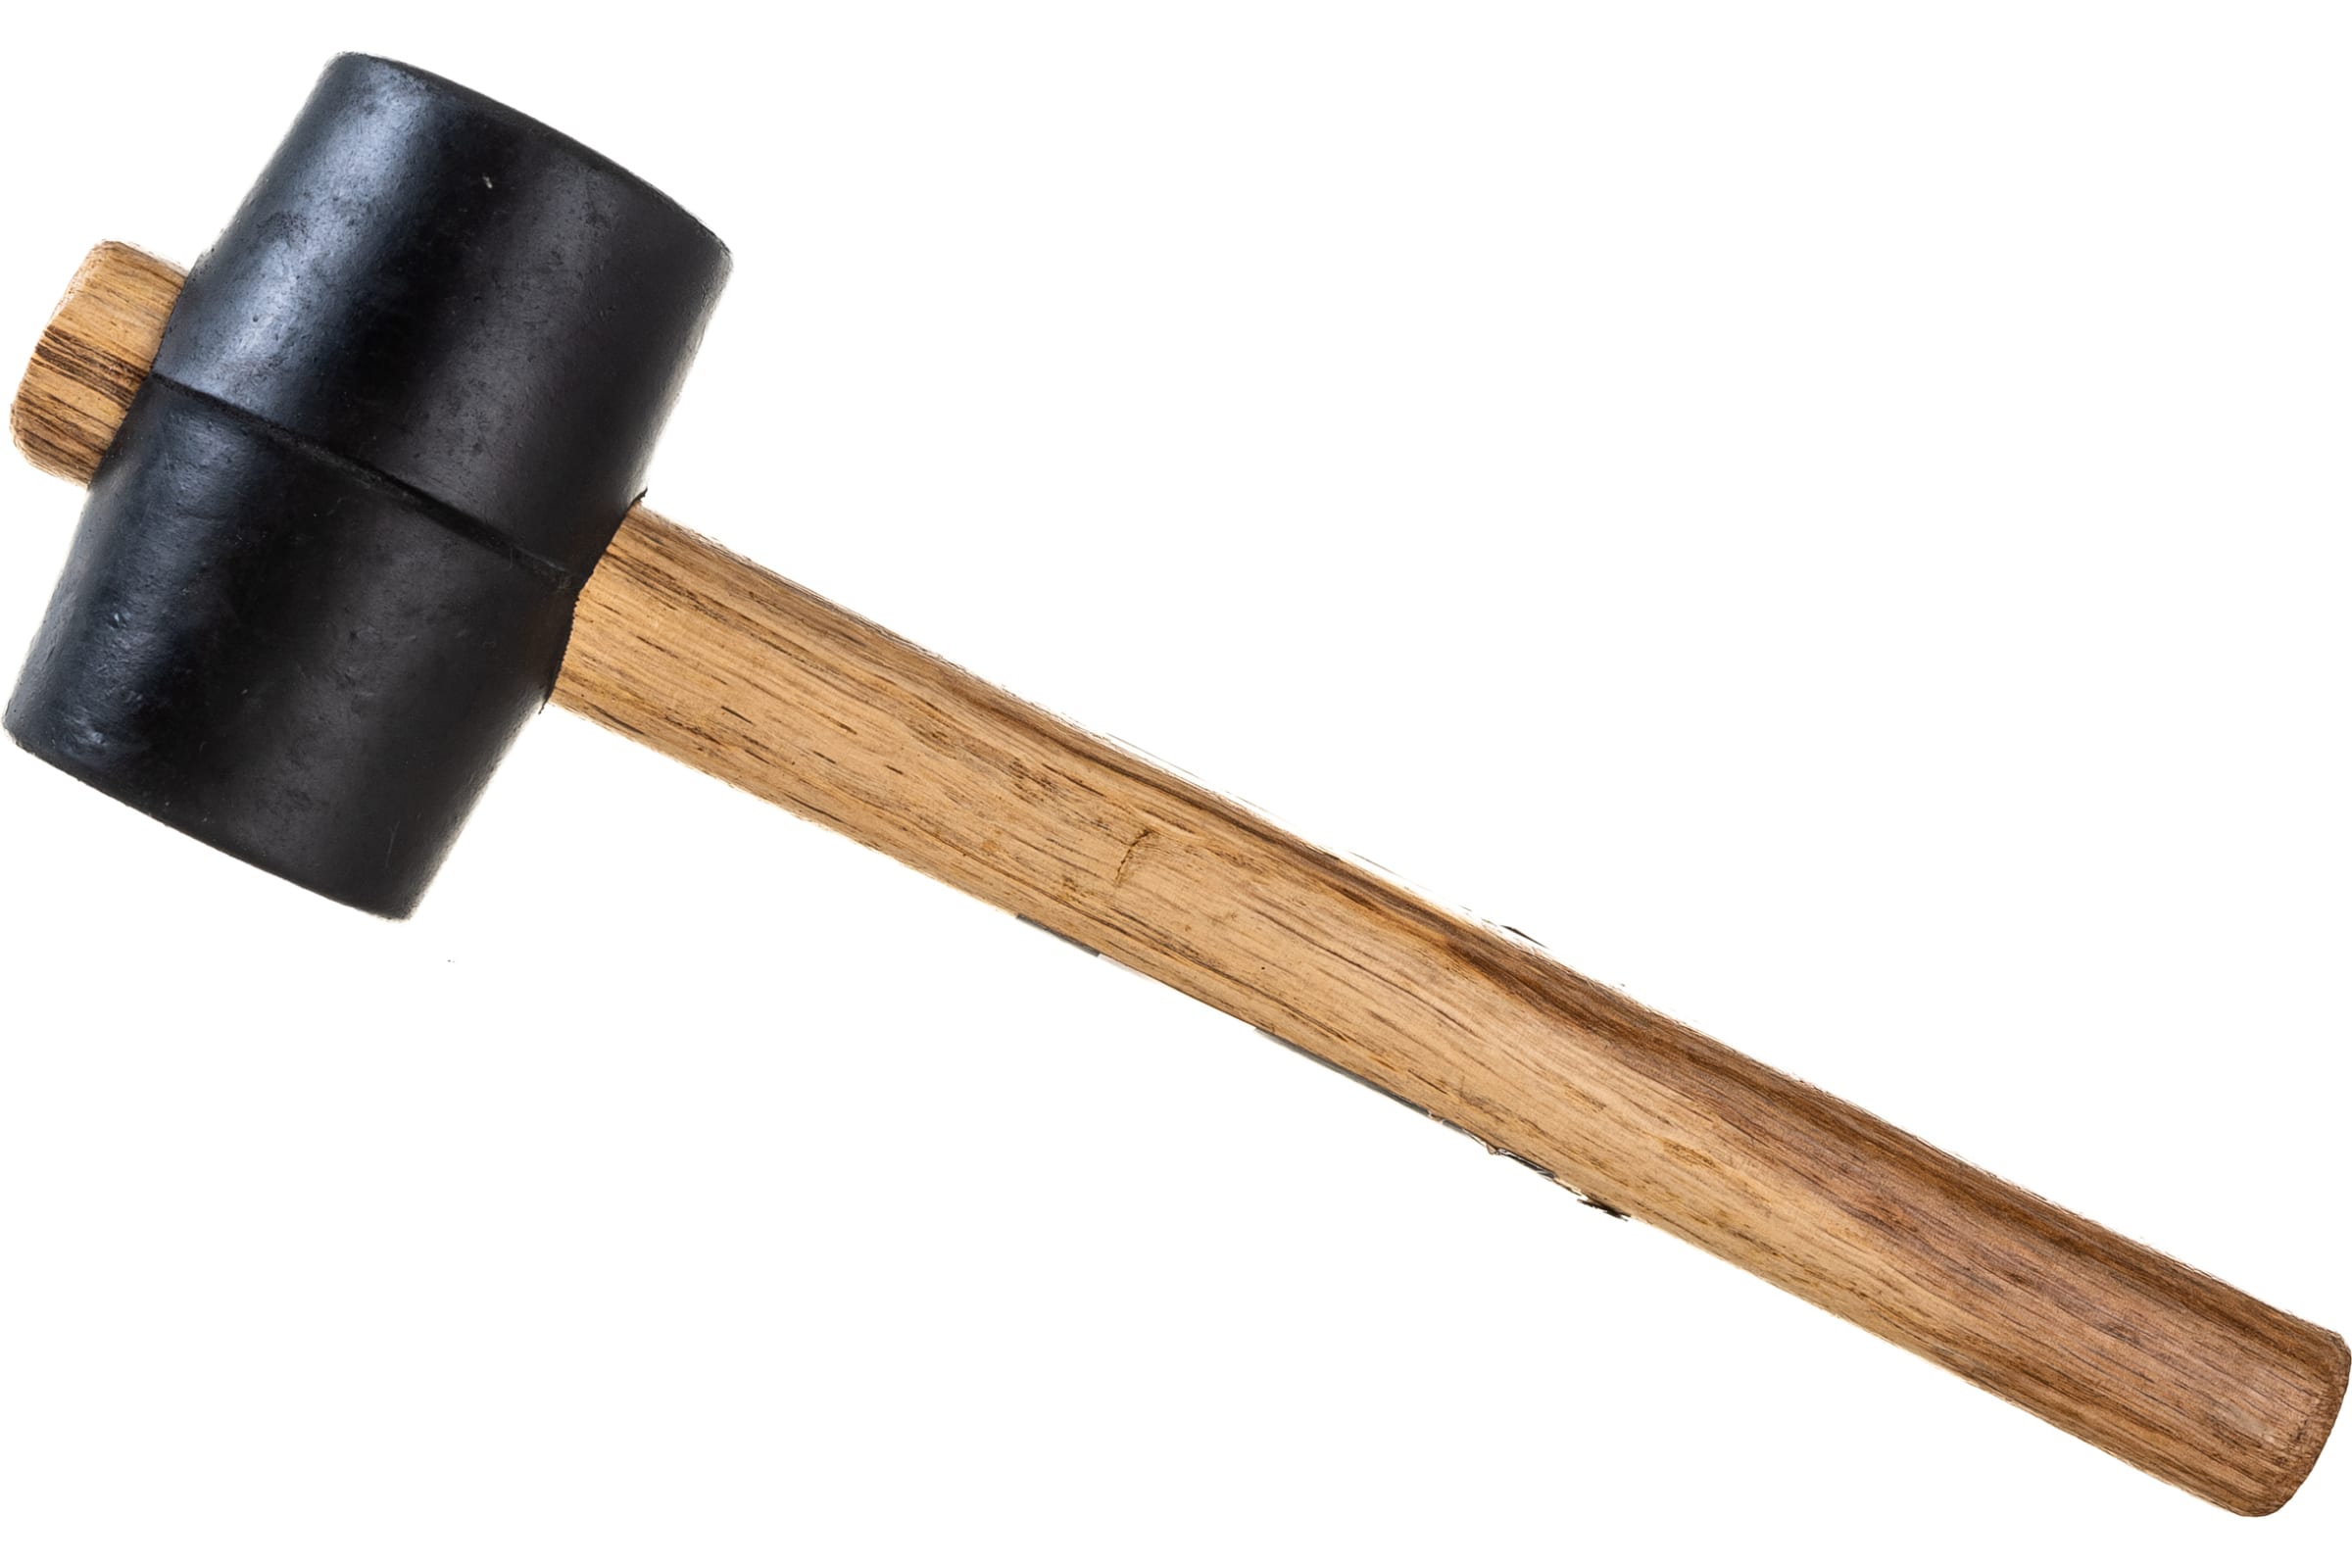 ULTIMA Киянка, деревянная рукоятка, 230 г, черная резина, 121040 резиновая киянка ultima